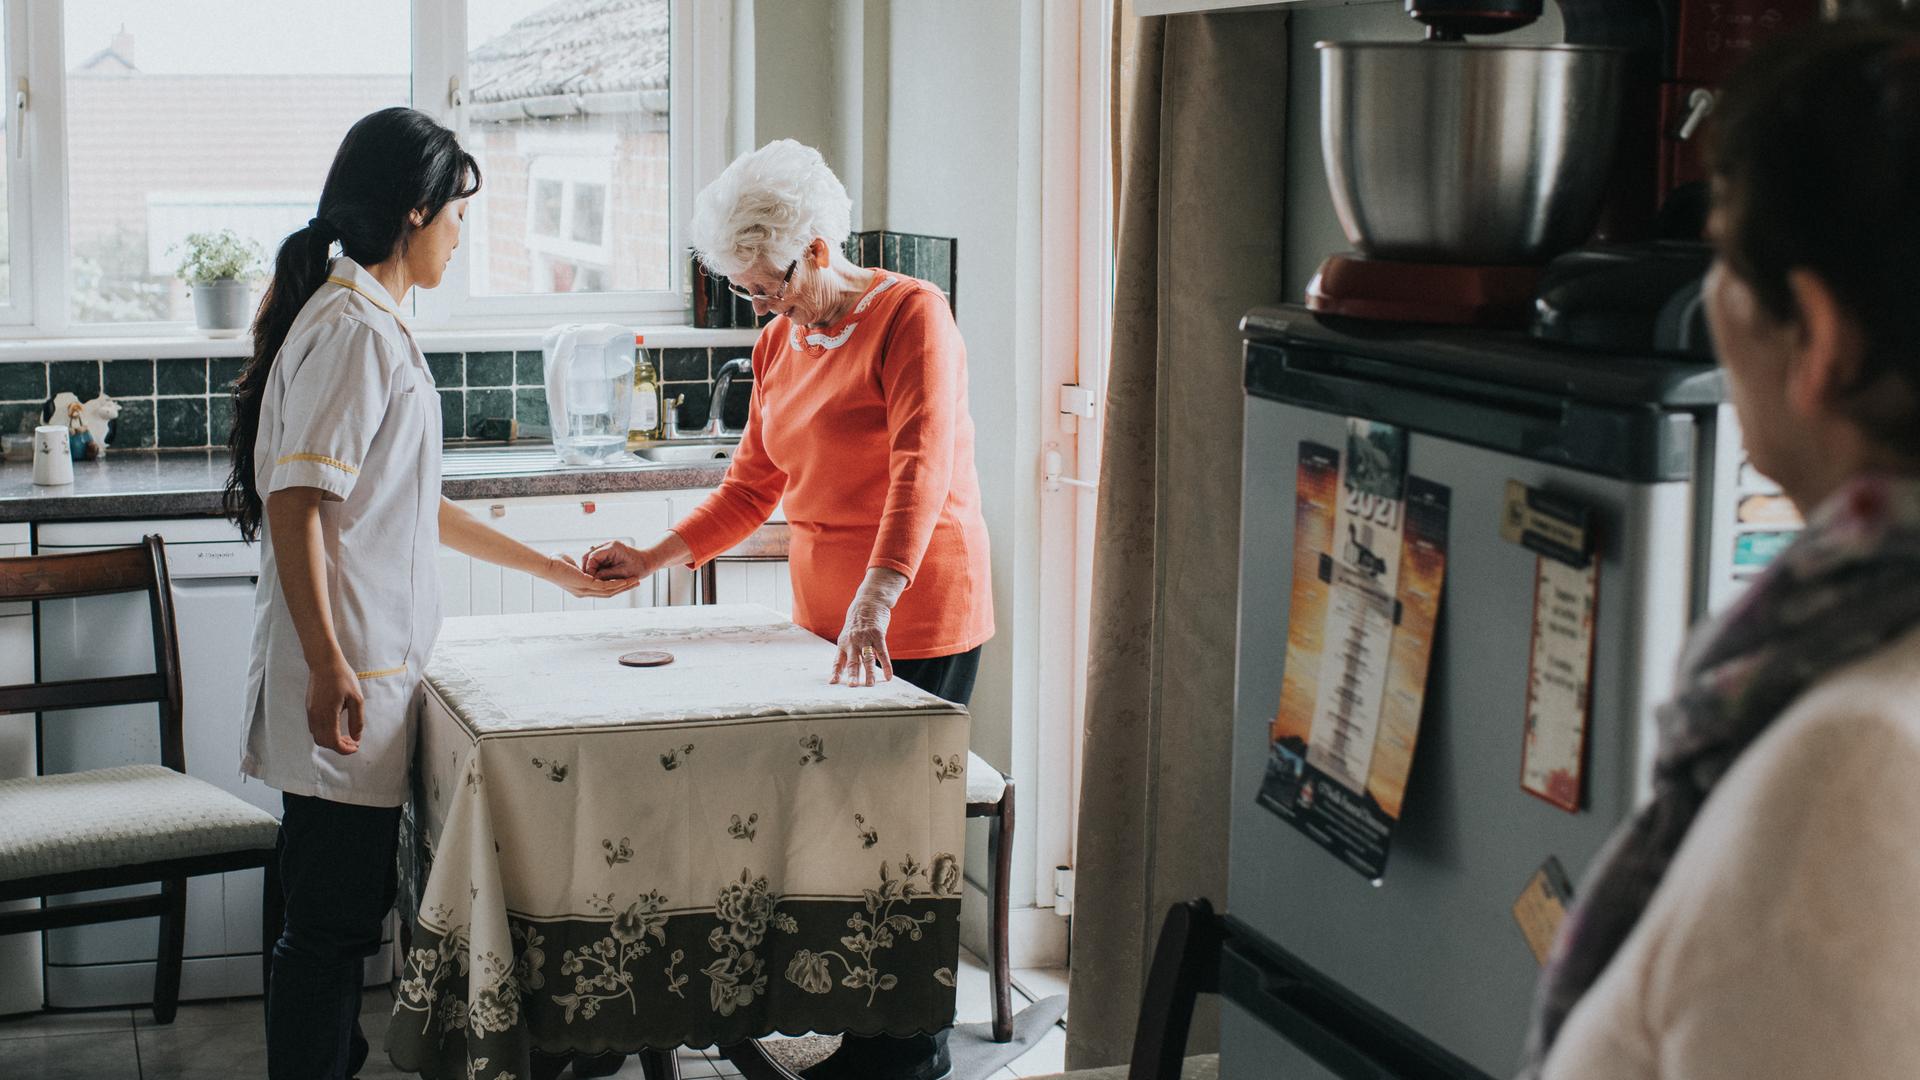 Eine ältere Dame steht mit ihrer Pflegekraft am Küchentisch und drückt ihr etwas in die Hand, während eine dritte Person mit etwas Abstand die Szene beobachtet.